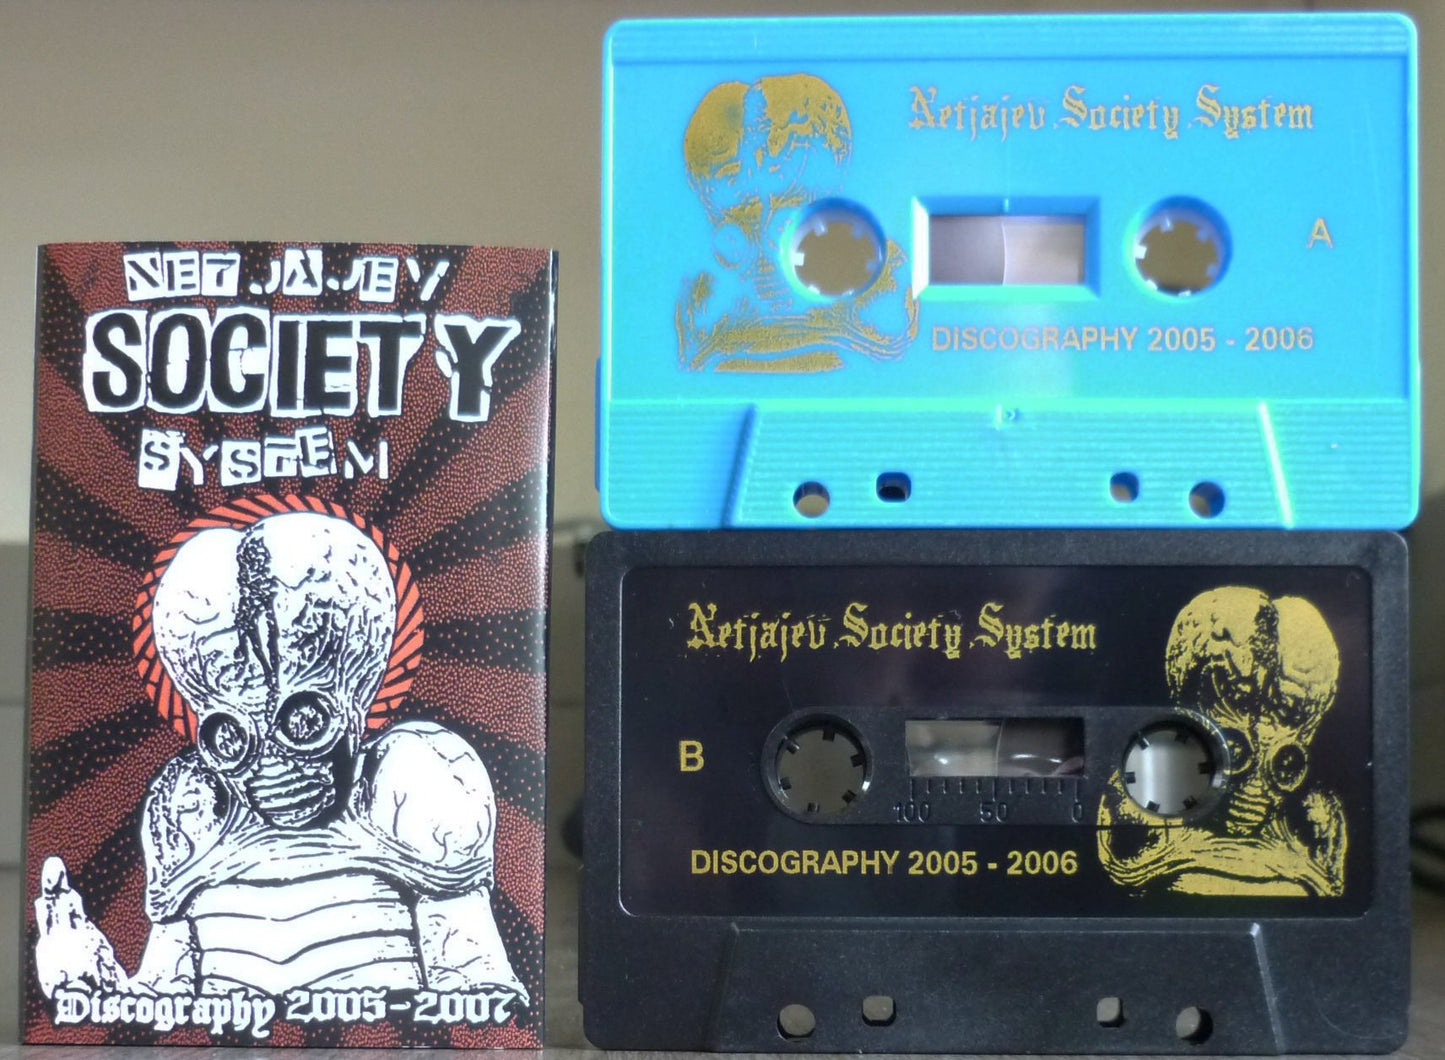 NETJAJEV SOCIETY SYSTEM - Discography 2005-2007 Tape